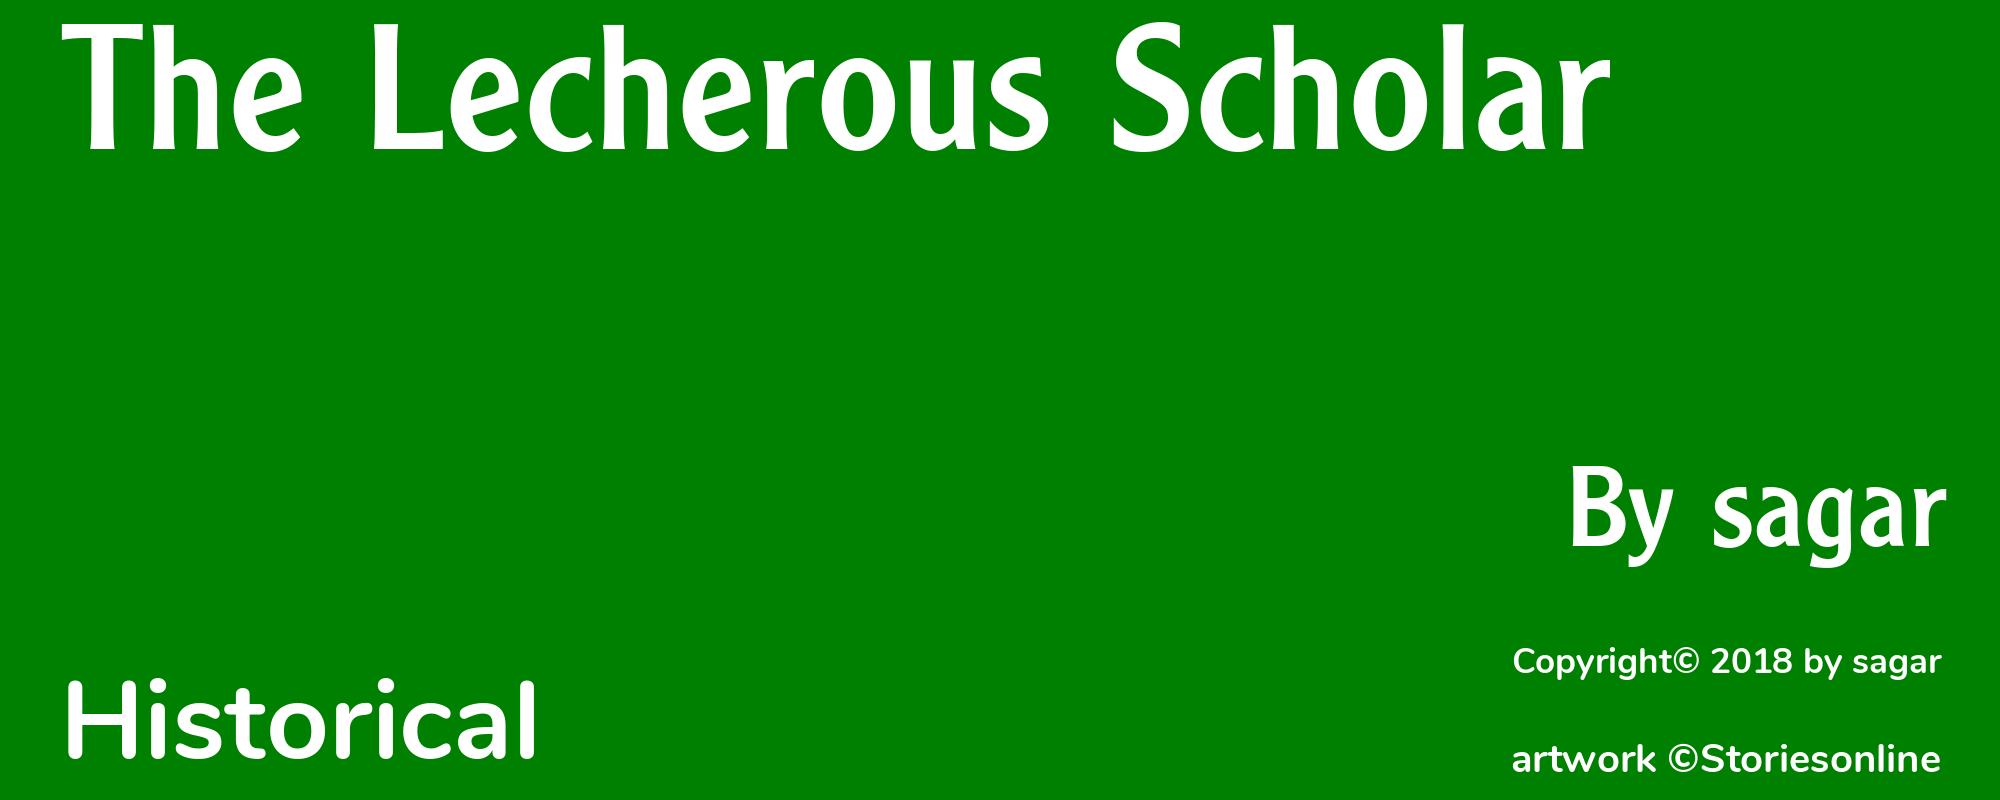 The Lecherous Scholar - Cover